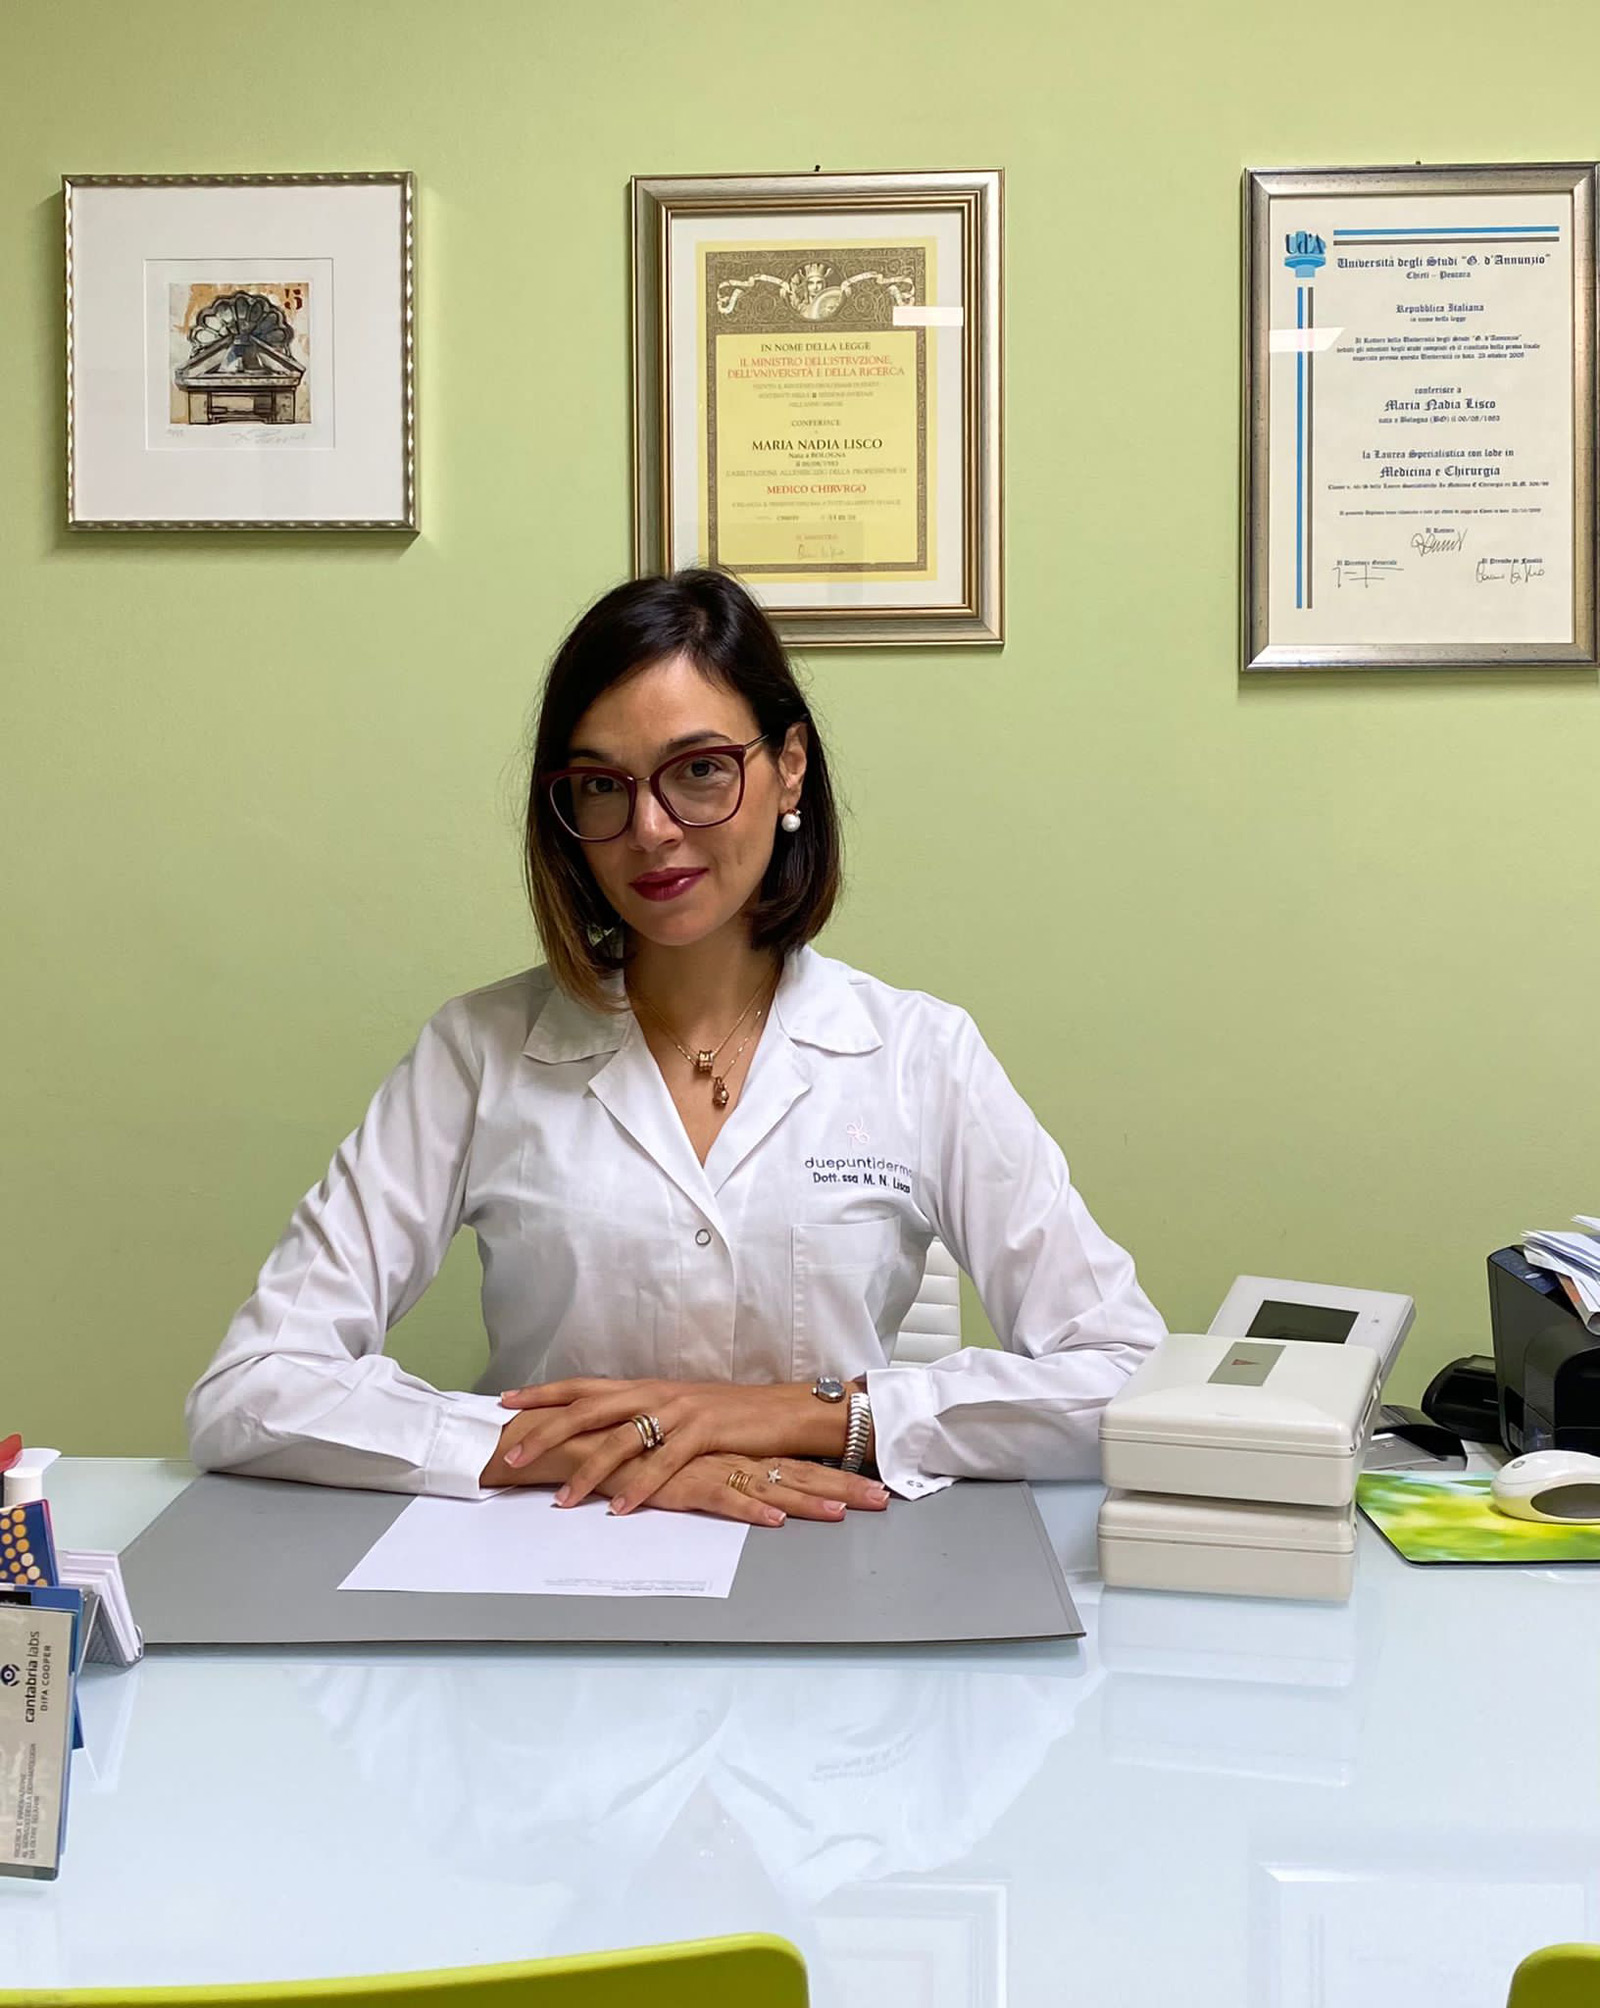 Dottore MARIA NADIA LISCO - Poliambulatorio I Portici - Giulianova